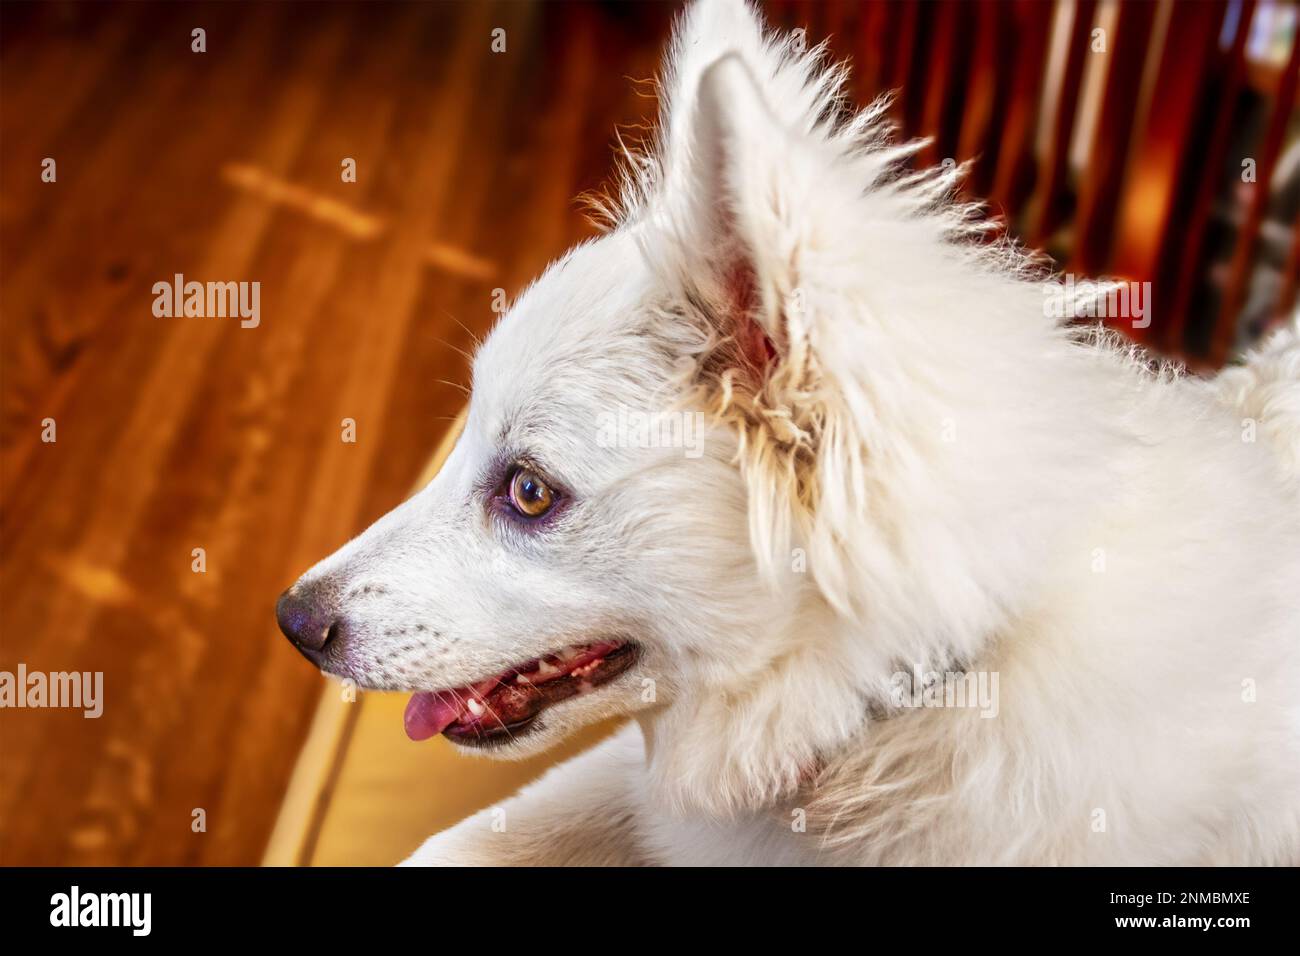 Porträt eines Hundes - Weißer amerikanischer Eskimo-Spritz-Welpenkopf im Profil vor verschwommenem Hintergrund - Platz zum Kopieren Stockfoto